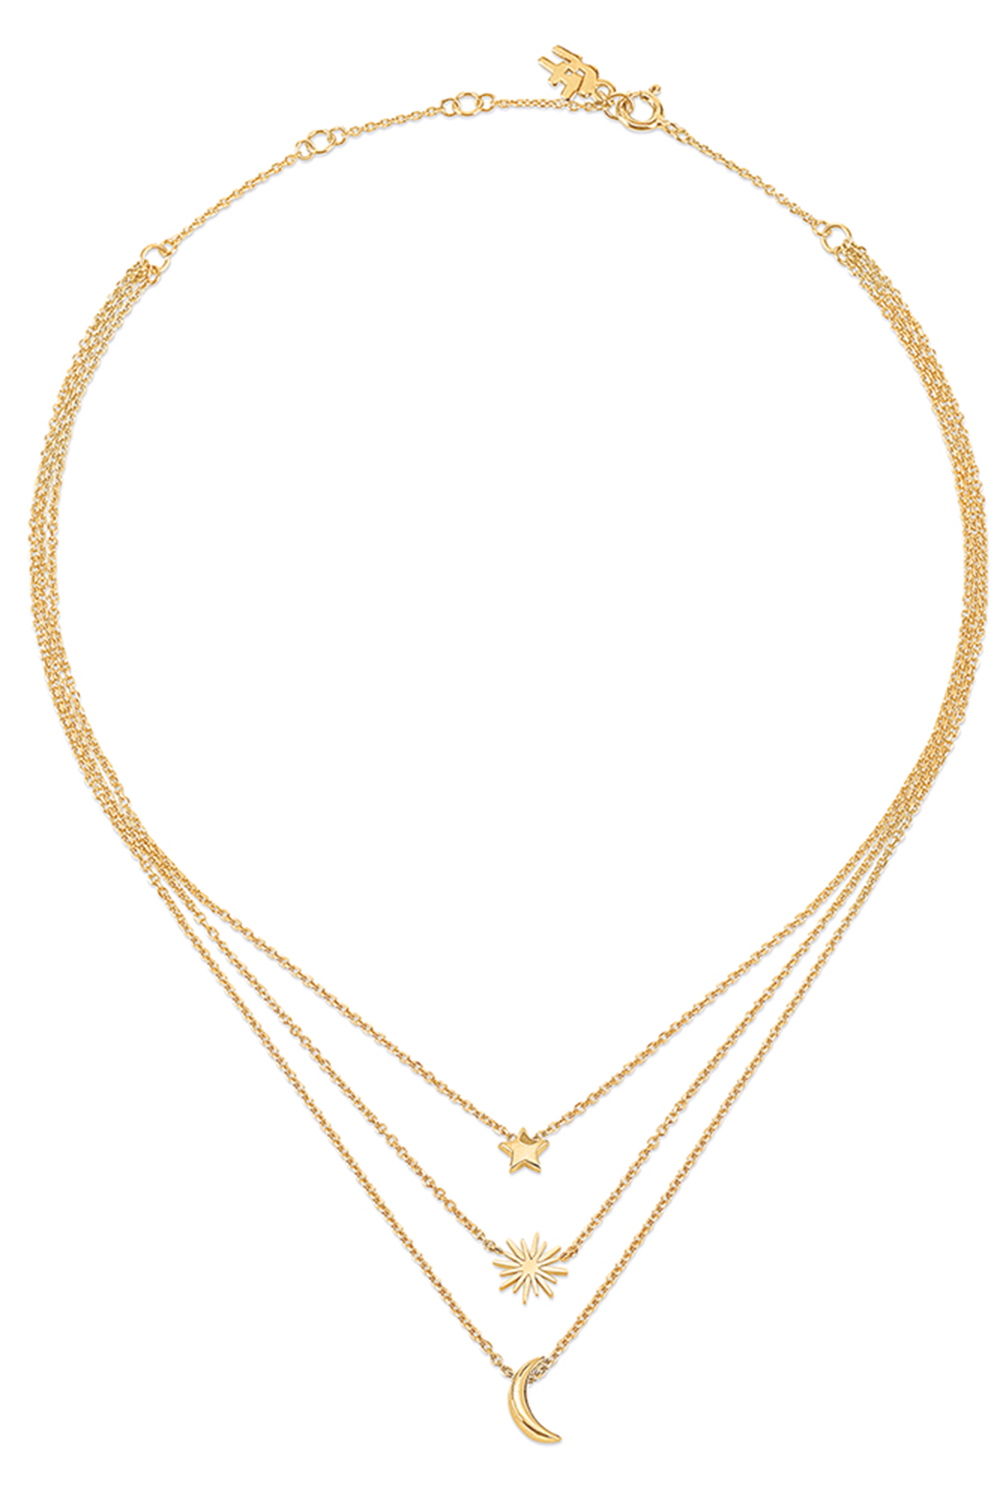 Γυναικεία/Αξεσουάρ/Κοσμήματα/Κολιέ FOLLI FOLLIE - Γυναικείο ασημένιο κολιέ FOLLI FOLLIE WISHING ON χρυσό